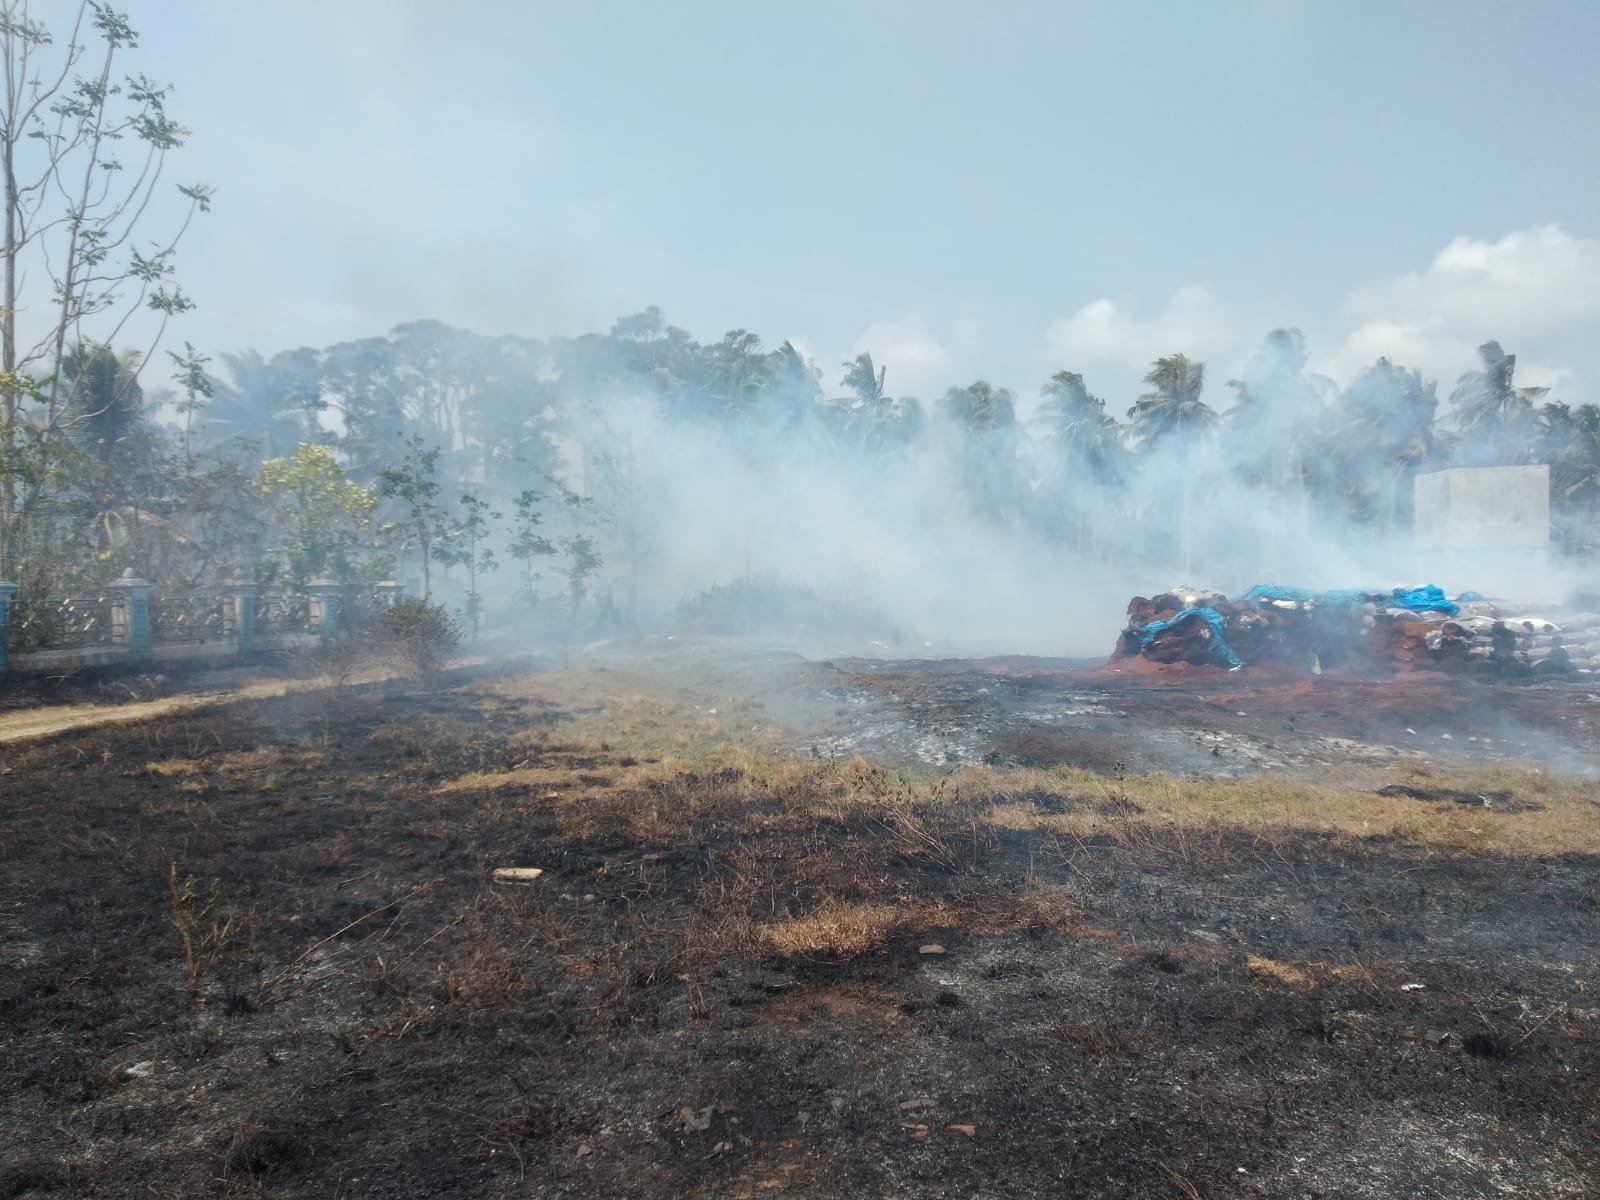 Diduga Akibat Puntung Rokok, Sekitar 8 Hektare Lahan Pengolahan Sabut Kelapa di Pesisir Barat Terbakar